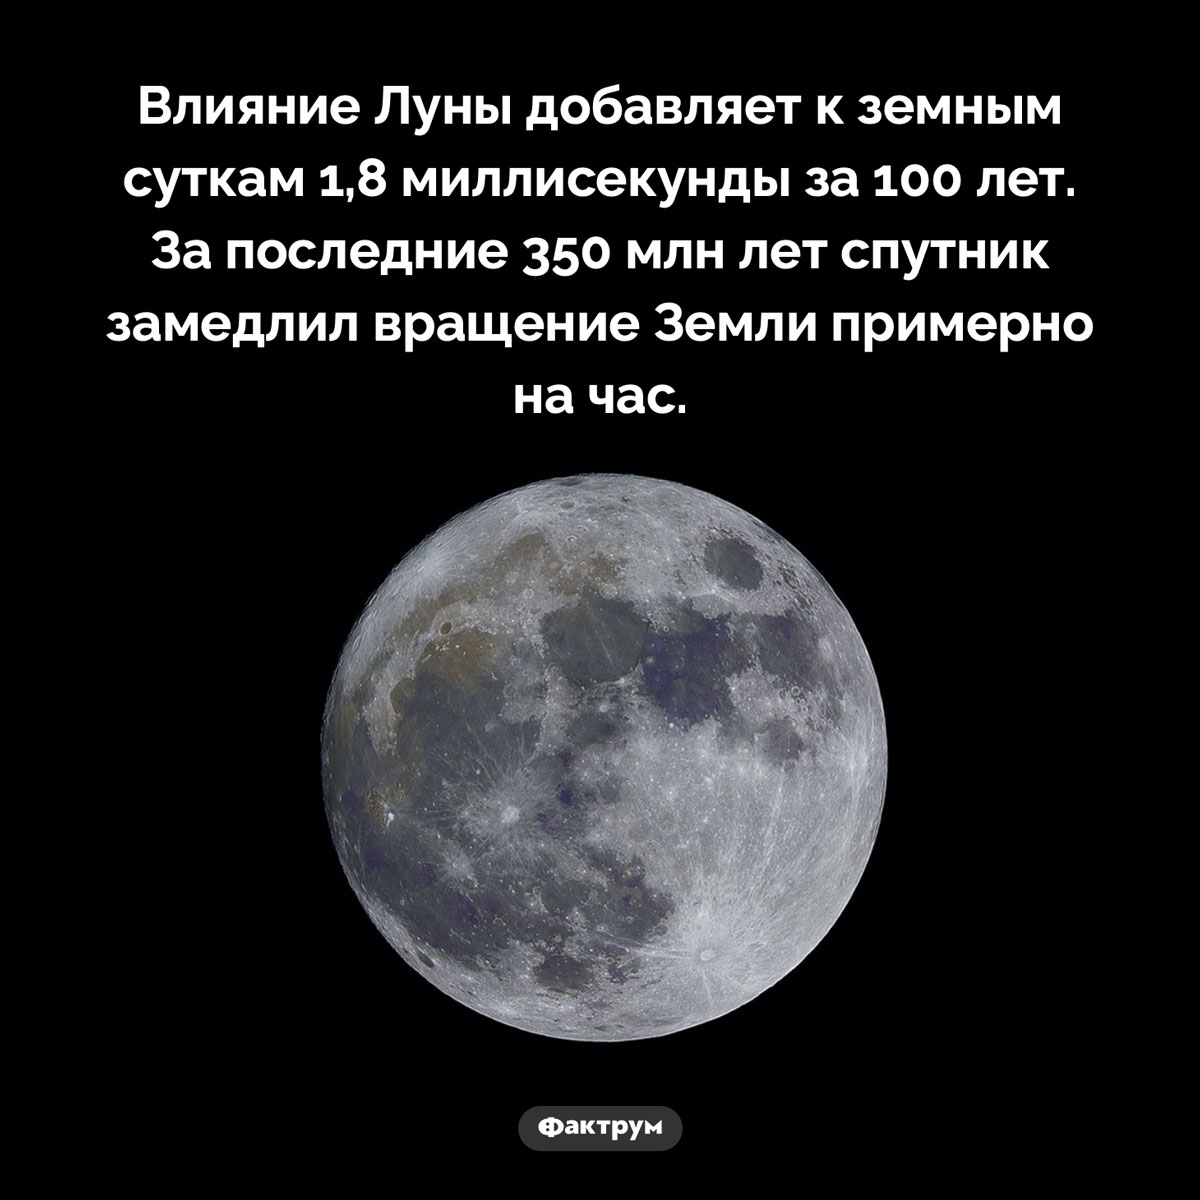 Влияние Луны на Землю. Влияние Луны добавляет к земным суткам 1,8 миллисекунды за 100 лет. За последние 350 млн лет спутник замедлил вращение Земли примерно на час.